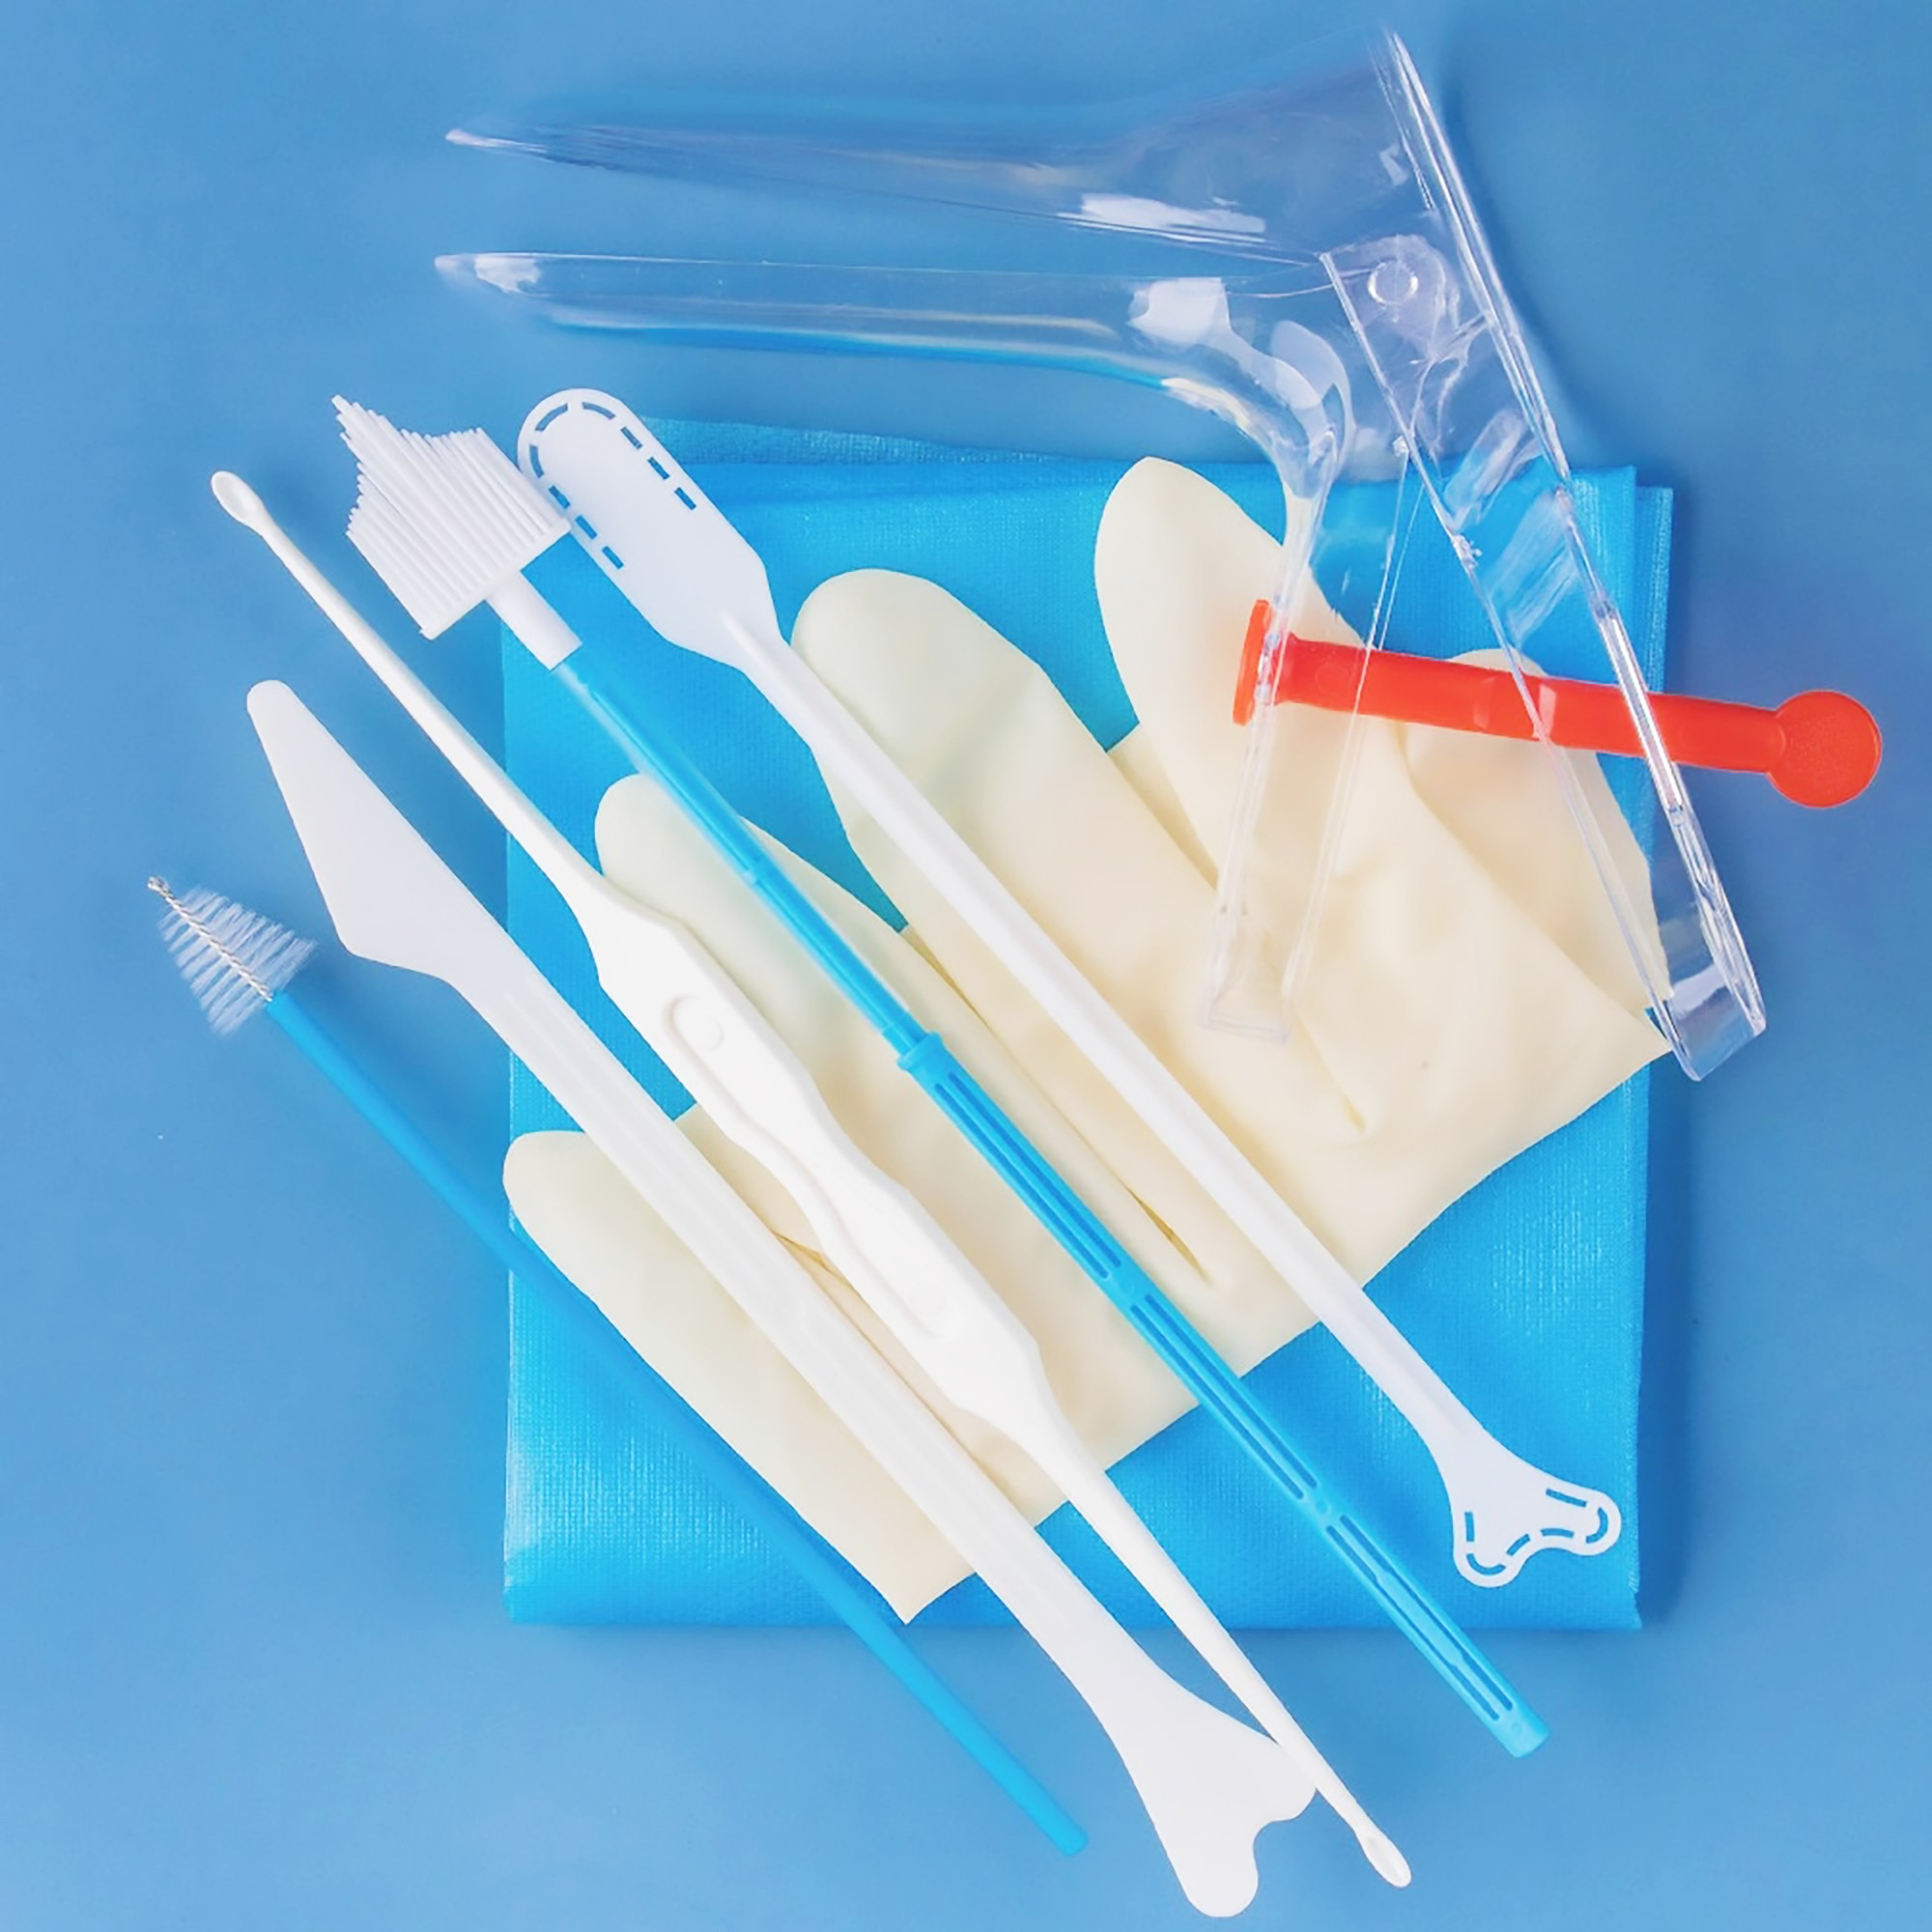 Gynecological examination kits